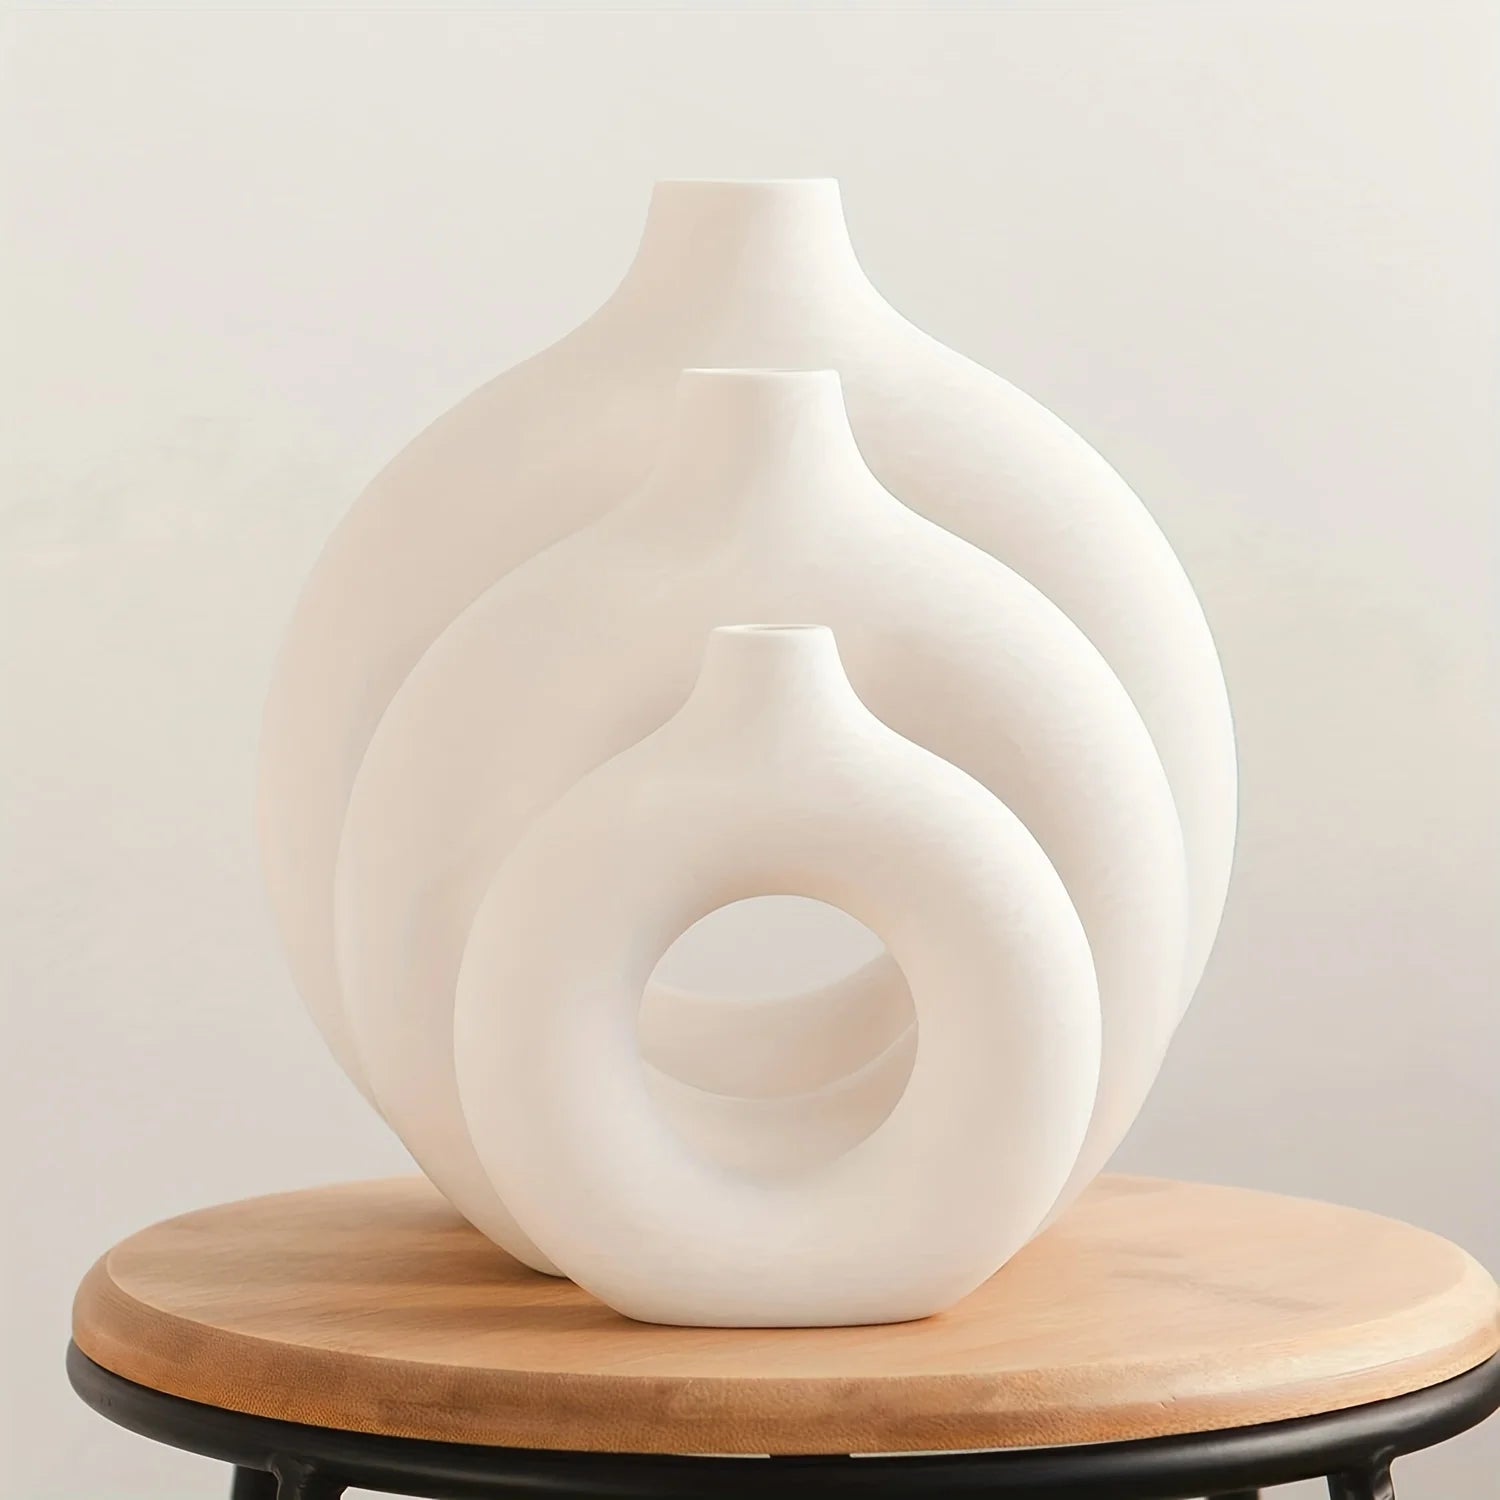 Vaso de cerâmica branco nórdico